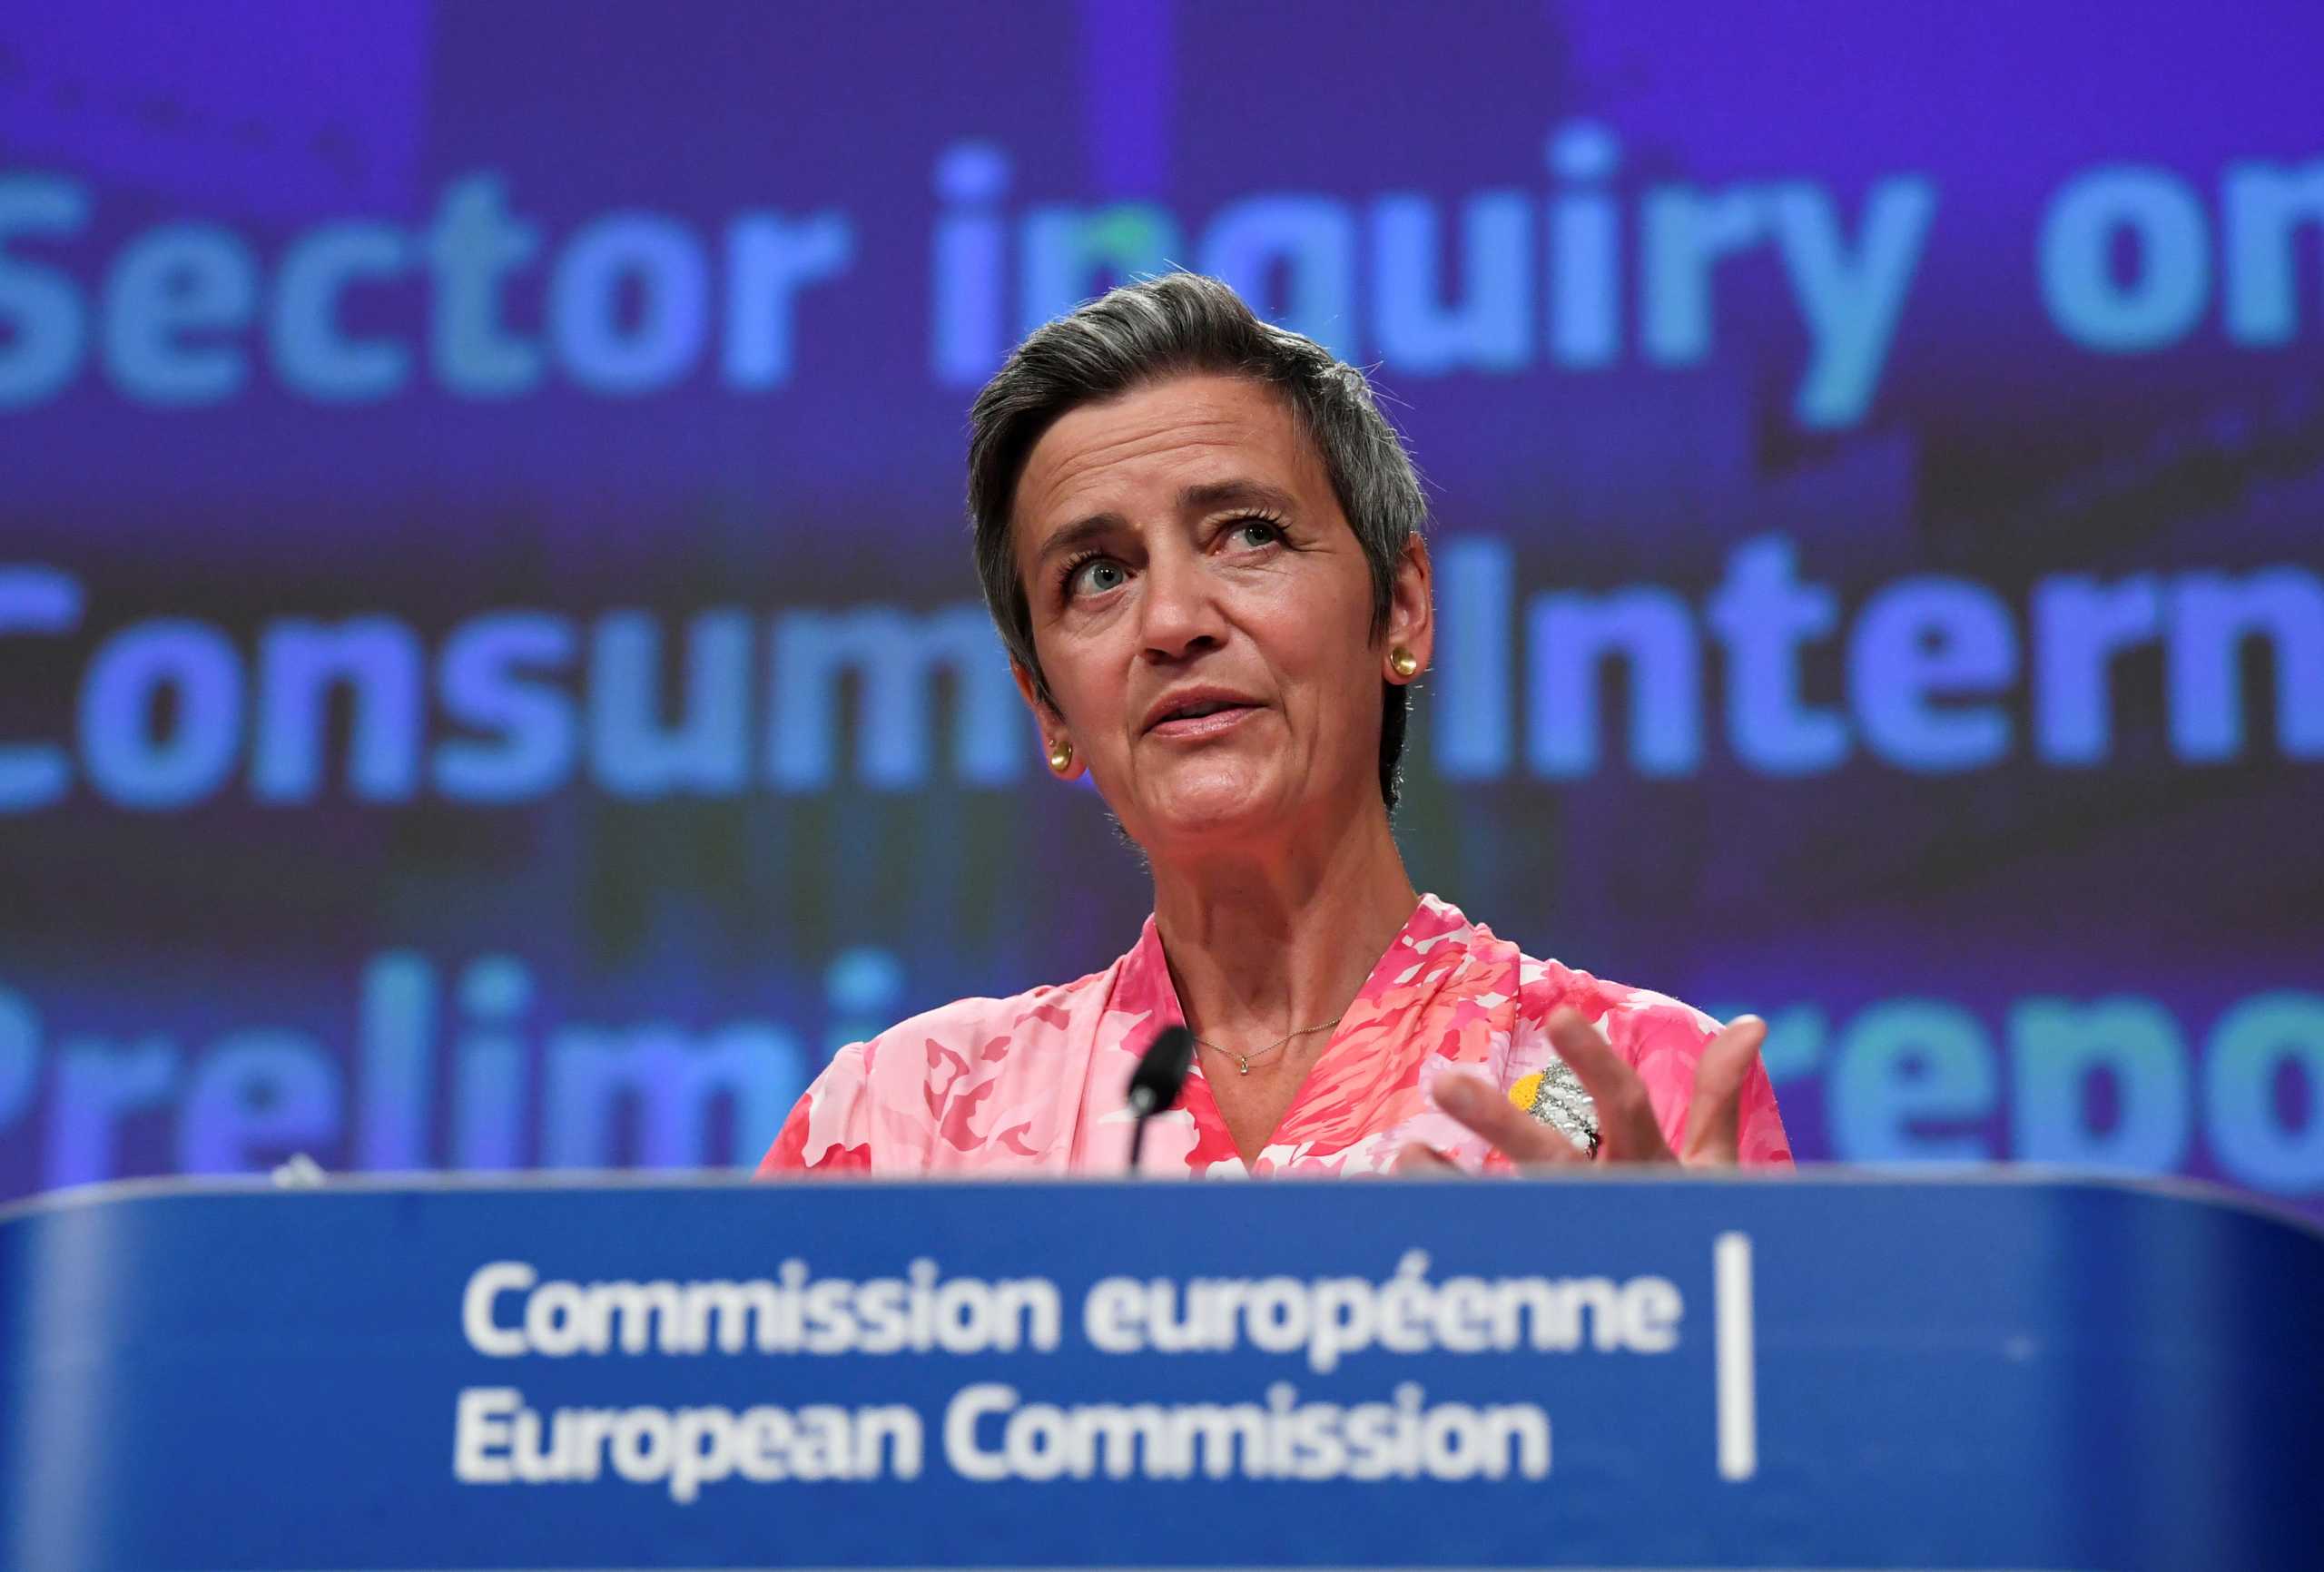 Η Πρόεδρος της Κομισιόν μίλαγε και η Ευρωπαία Επίτροπος Μαργκρέτε Βεστάγκερ… έπλεκε